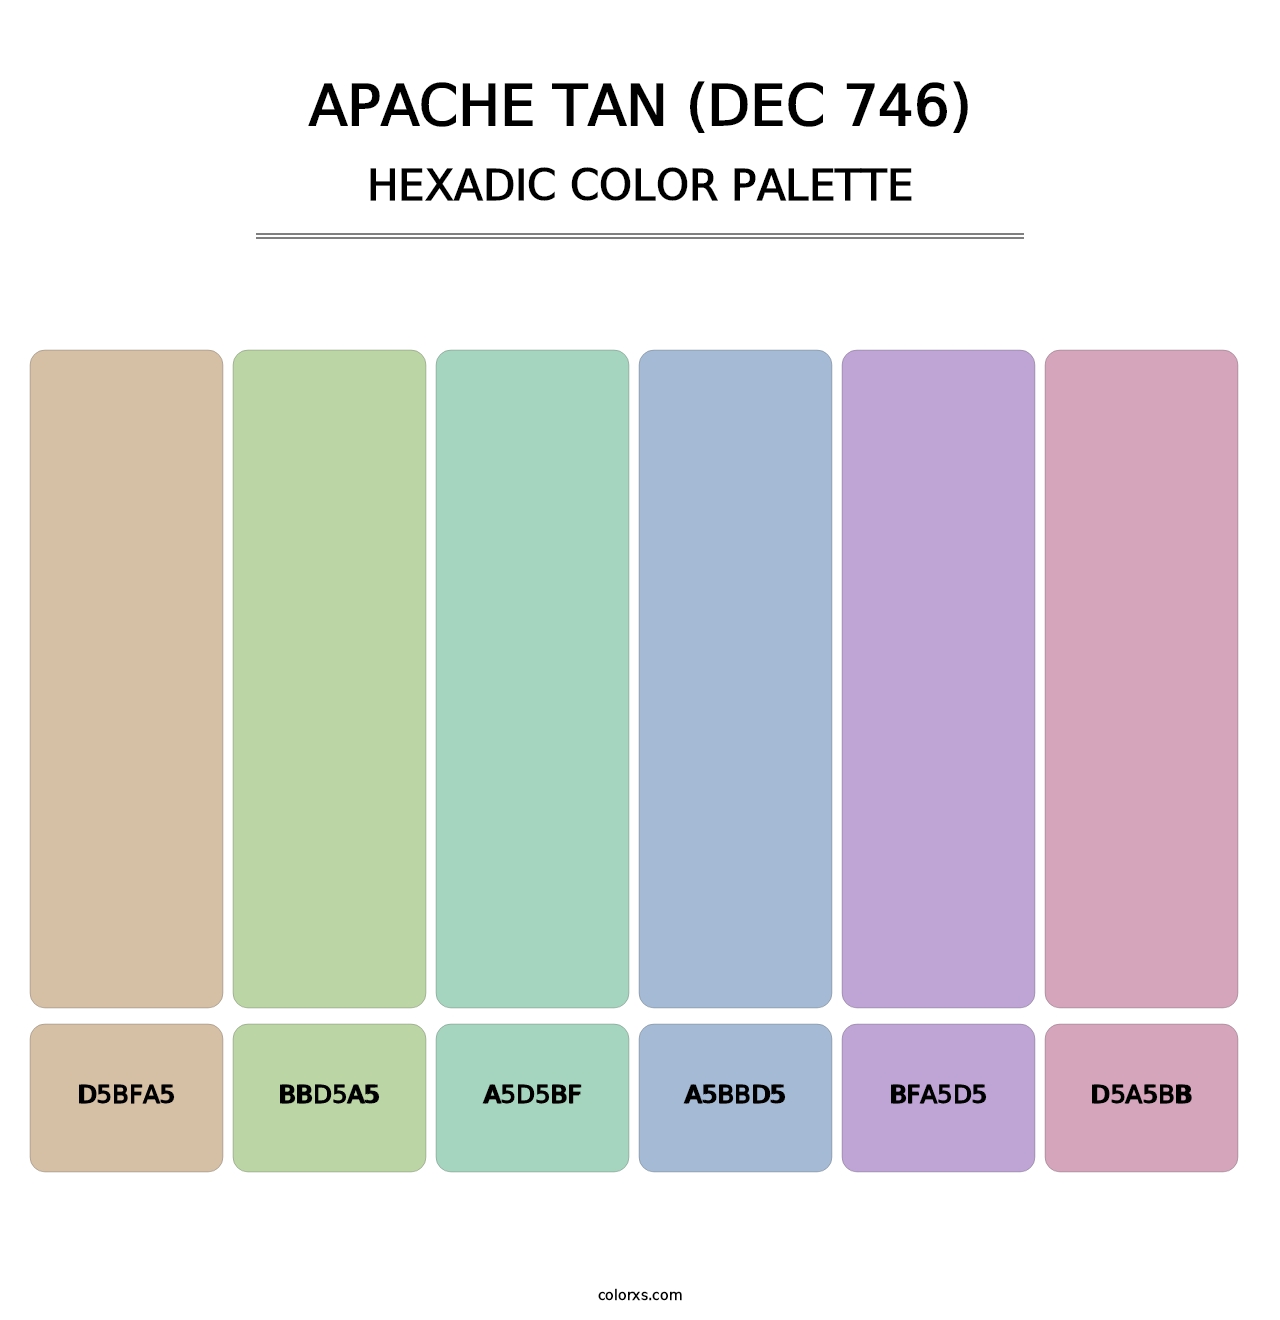 Apache Tan (DEC 746) - Hexadic Color Palette